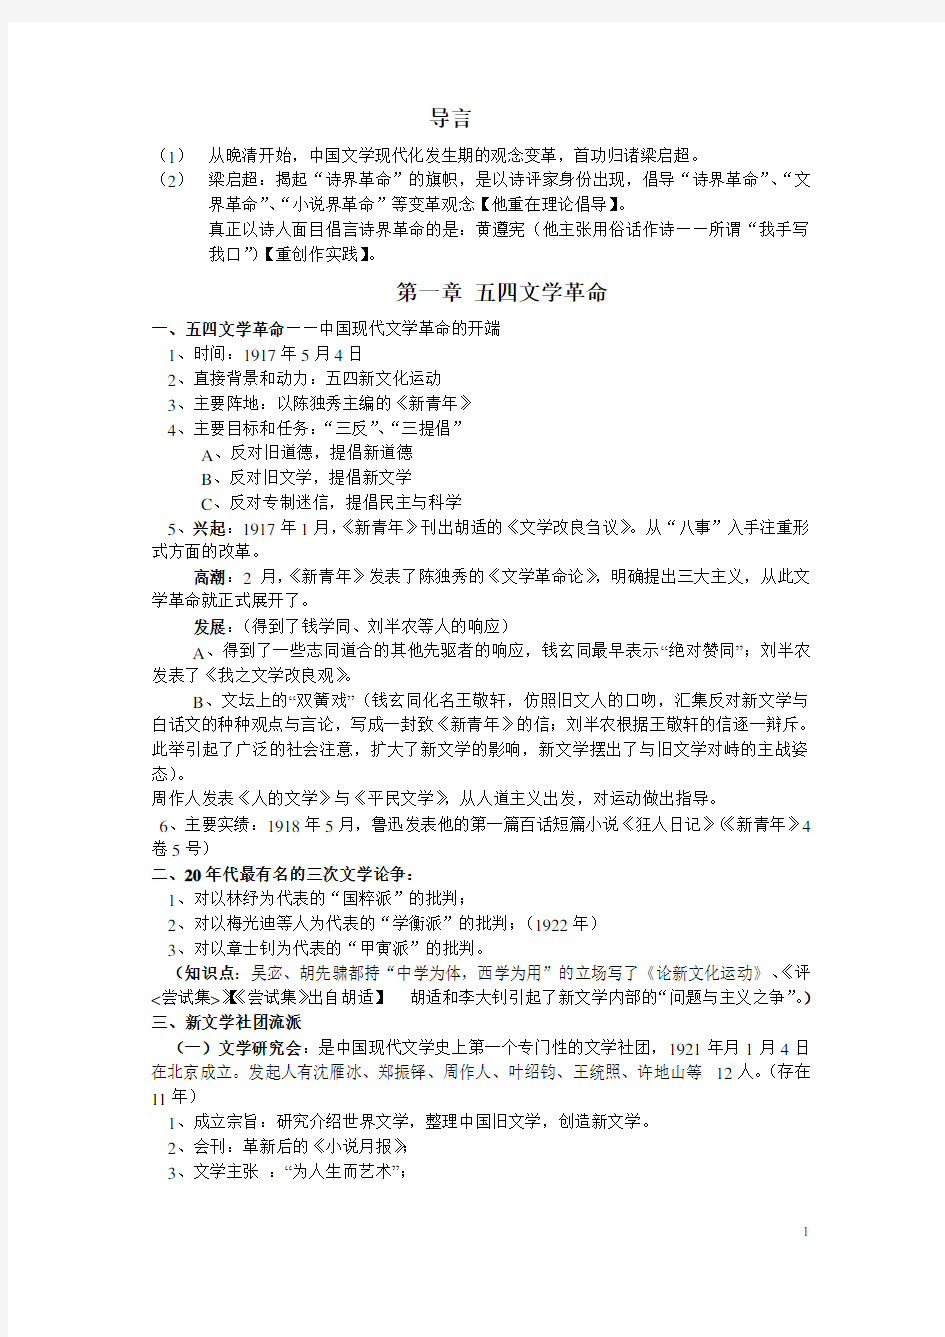 中国现代文学史考试复习资料,最有用的。